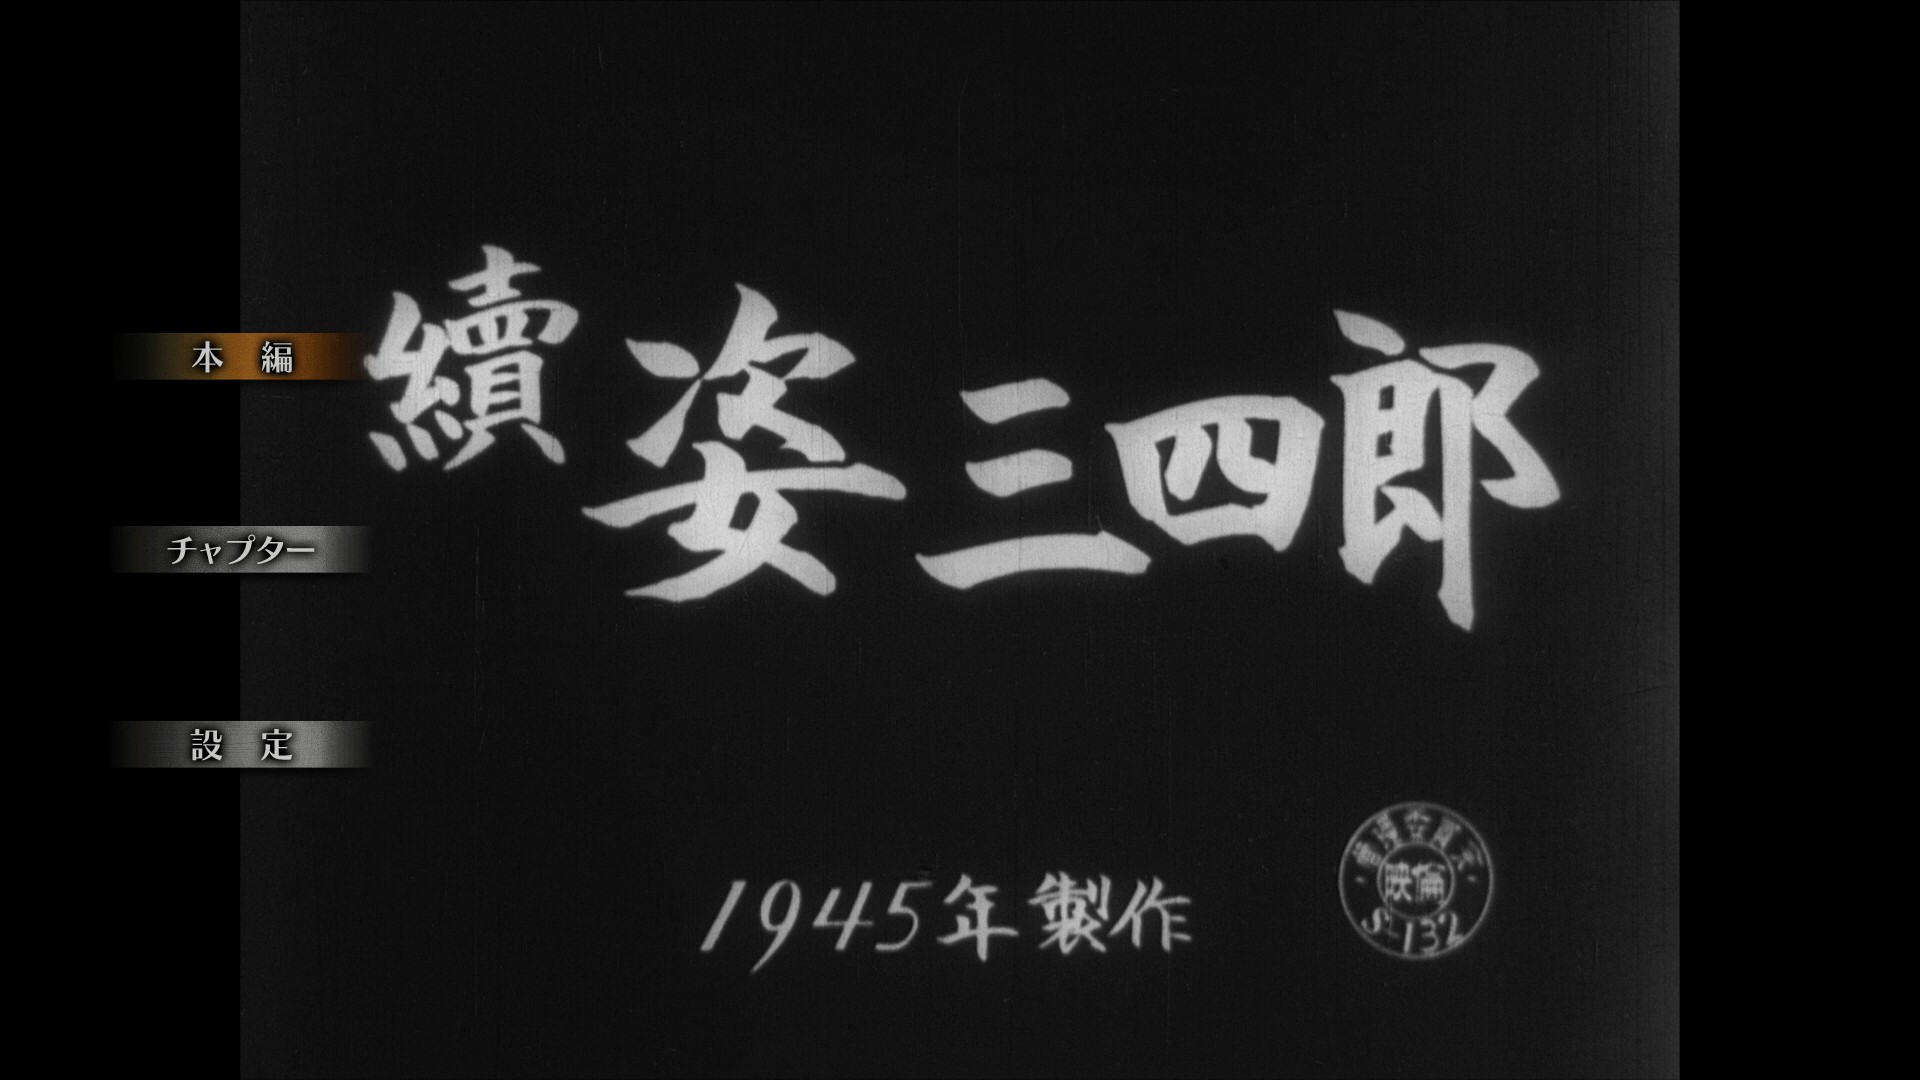 姿三四郎续集 [日东宝版蓝光原盘][DIY正片.简繁字幕]  Sugata Sanshiro Part Two 1945 JPN Blu-ray 1080P AVC LPCM 2.0-blucook#411@CHDBits  [24.57 GB ]-2.jpg